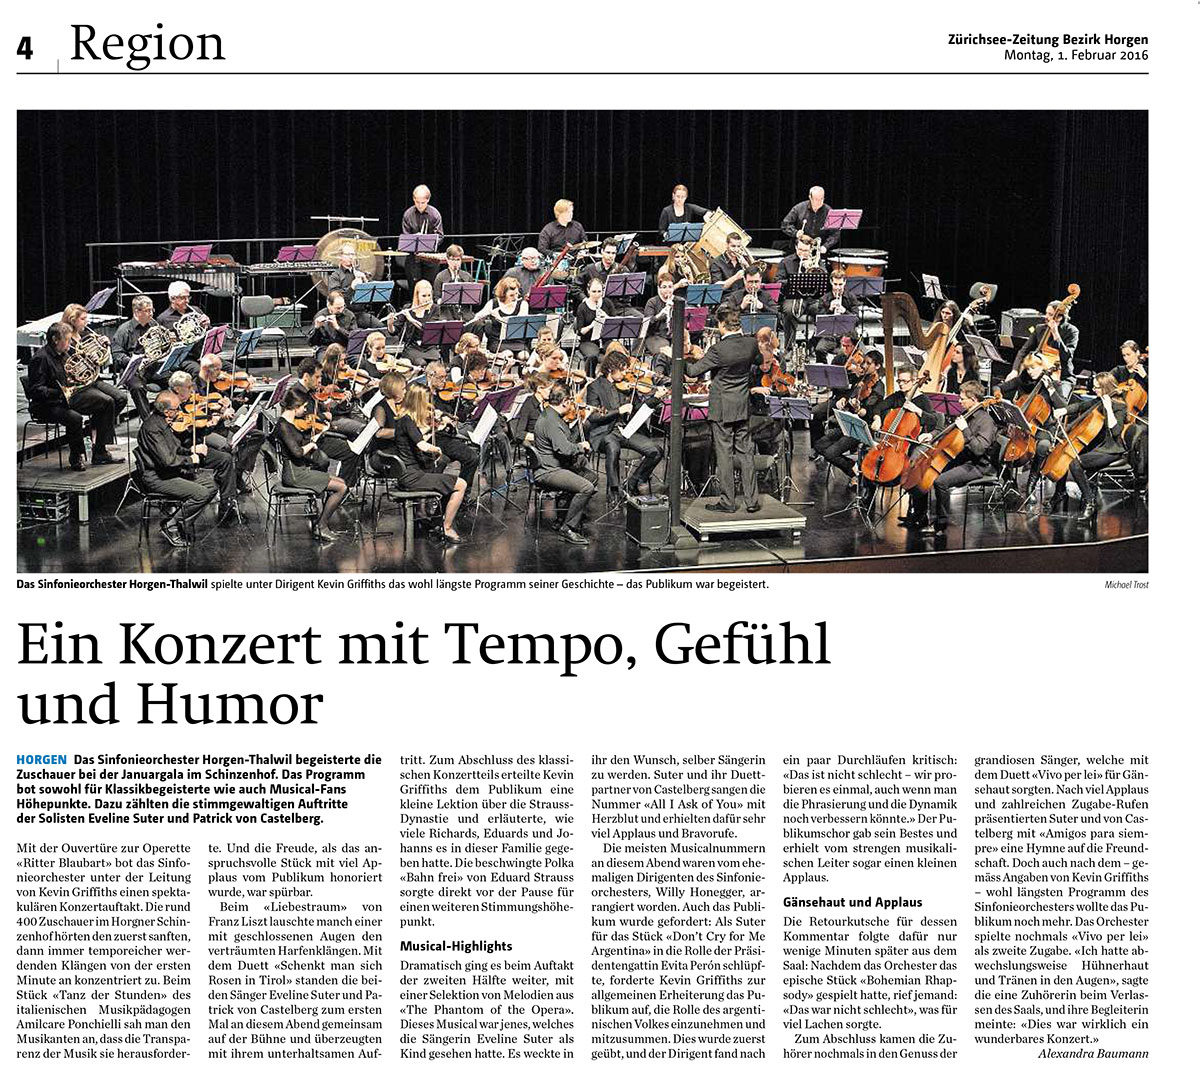 Zuerichsee-Zeitung / Februar 2016